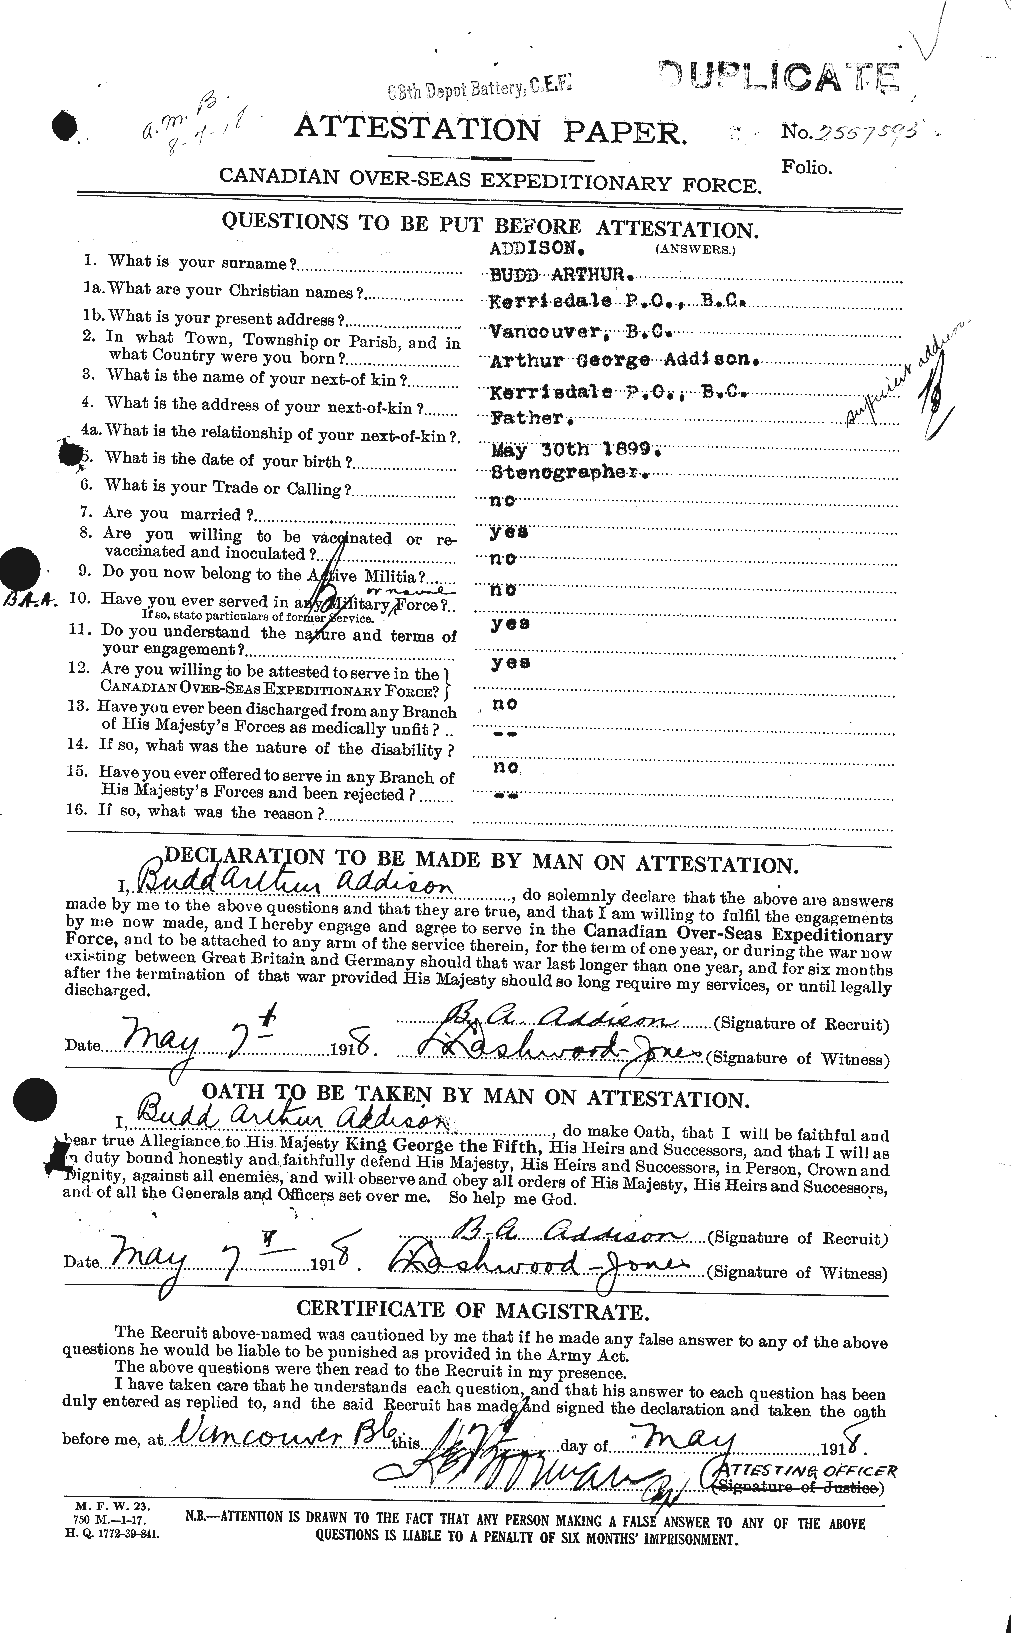 Dossiers du Personnel de la Première Guerre mondiale - CEC 202482a